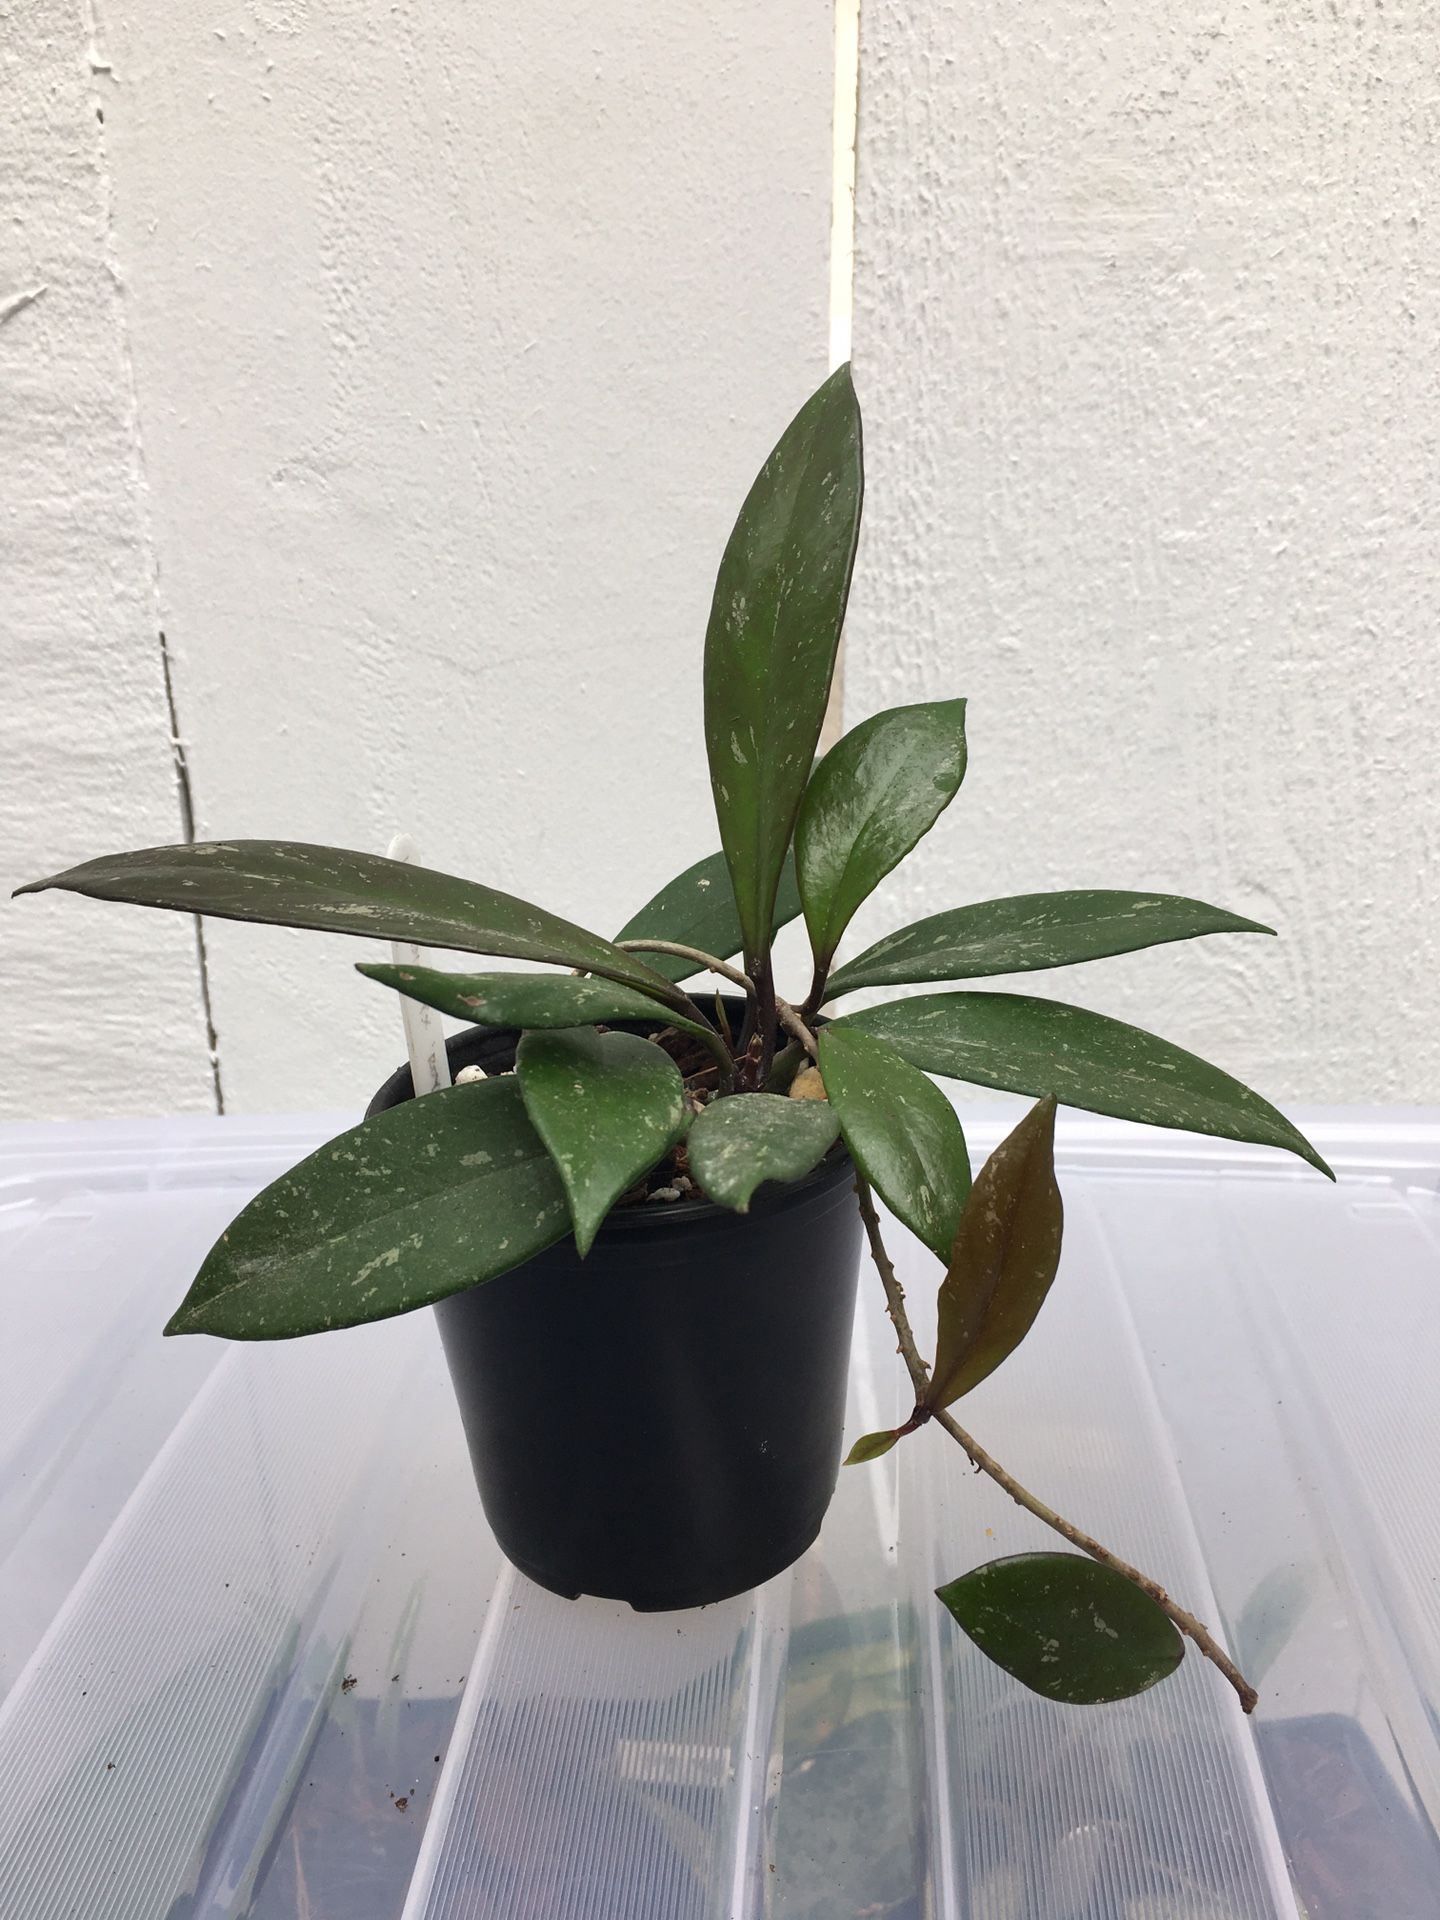 Hoya pubicalyx ‘Royal Hawaiian’ plant in 4” pot